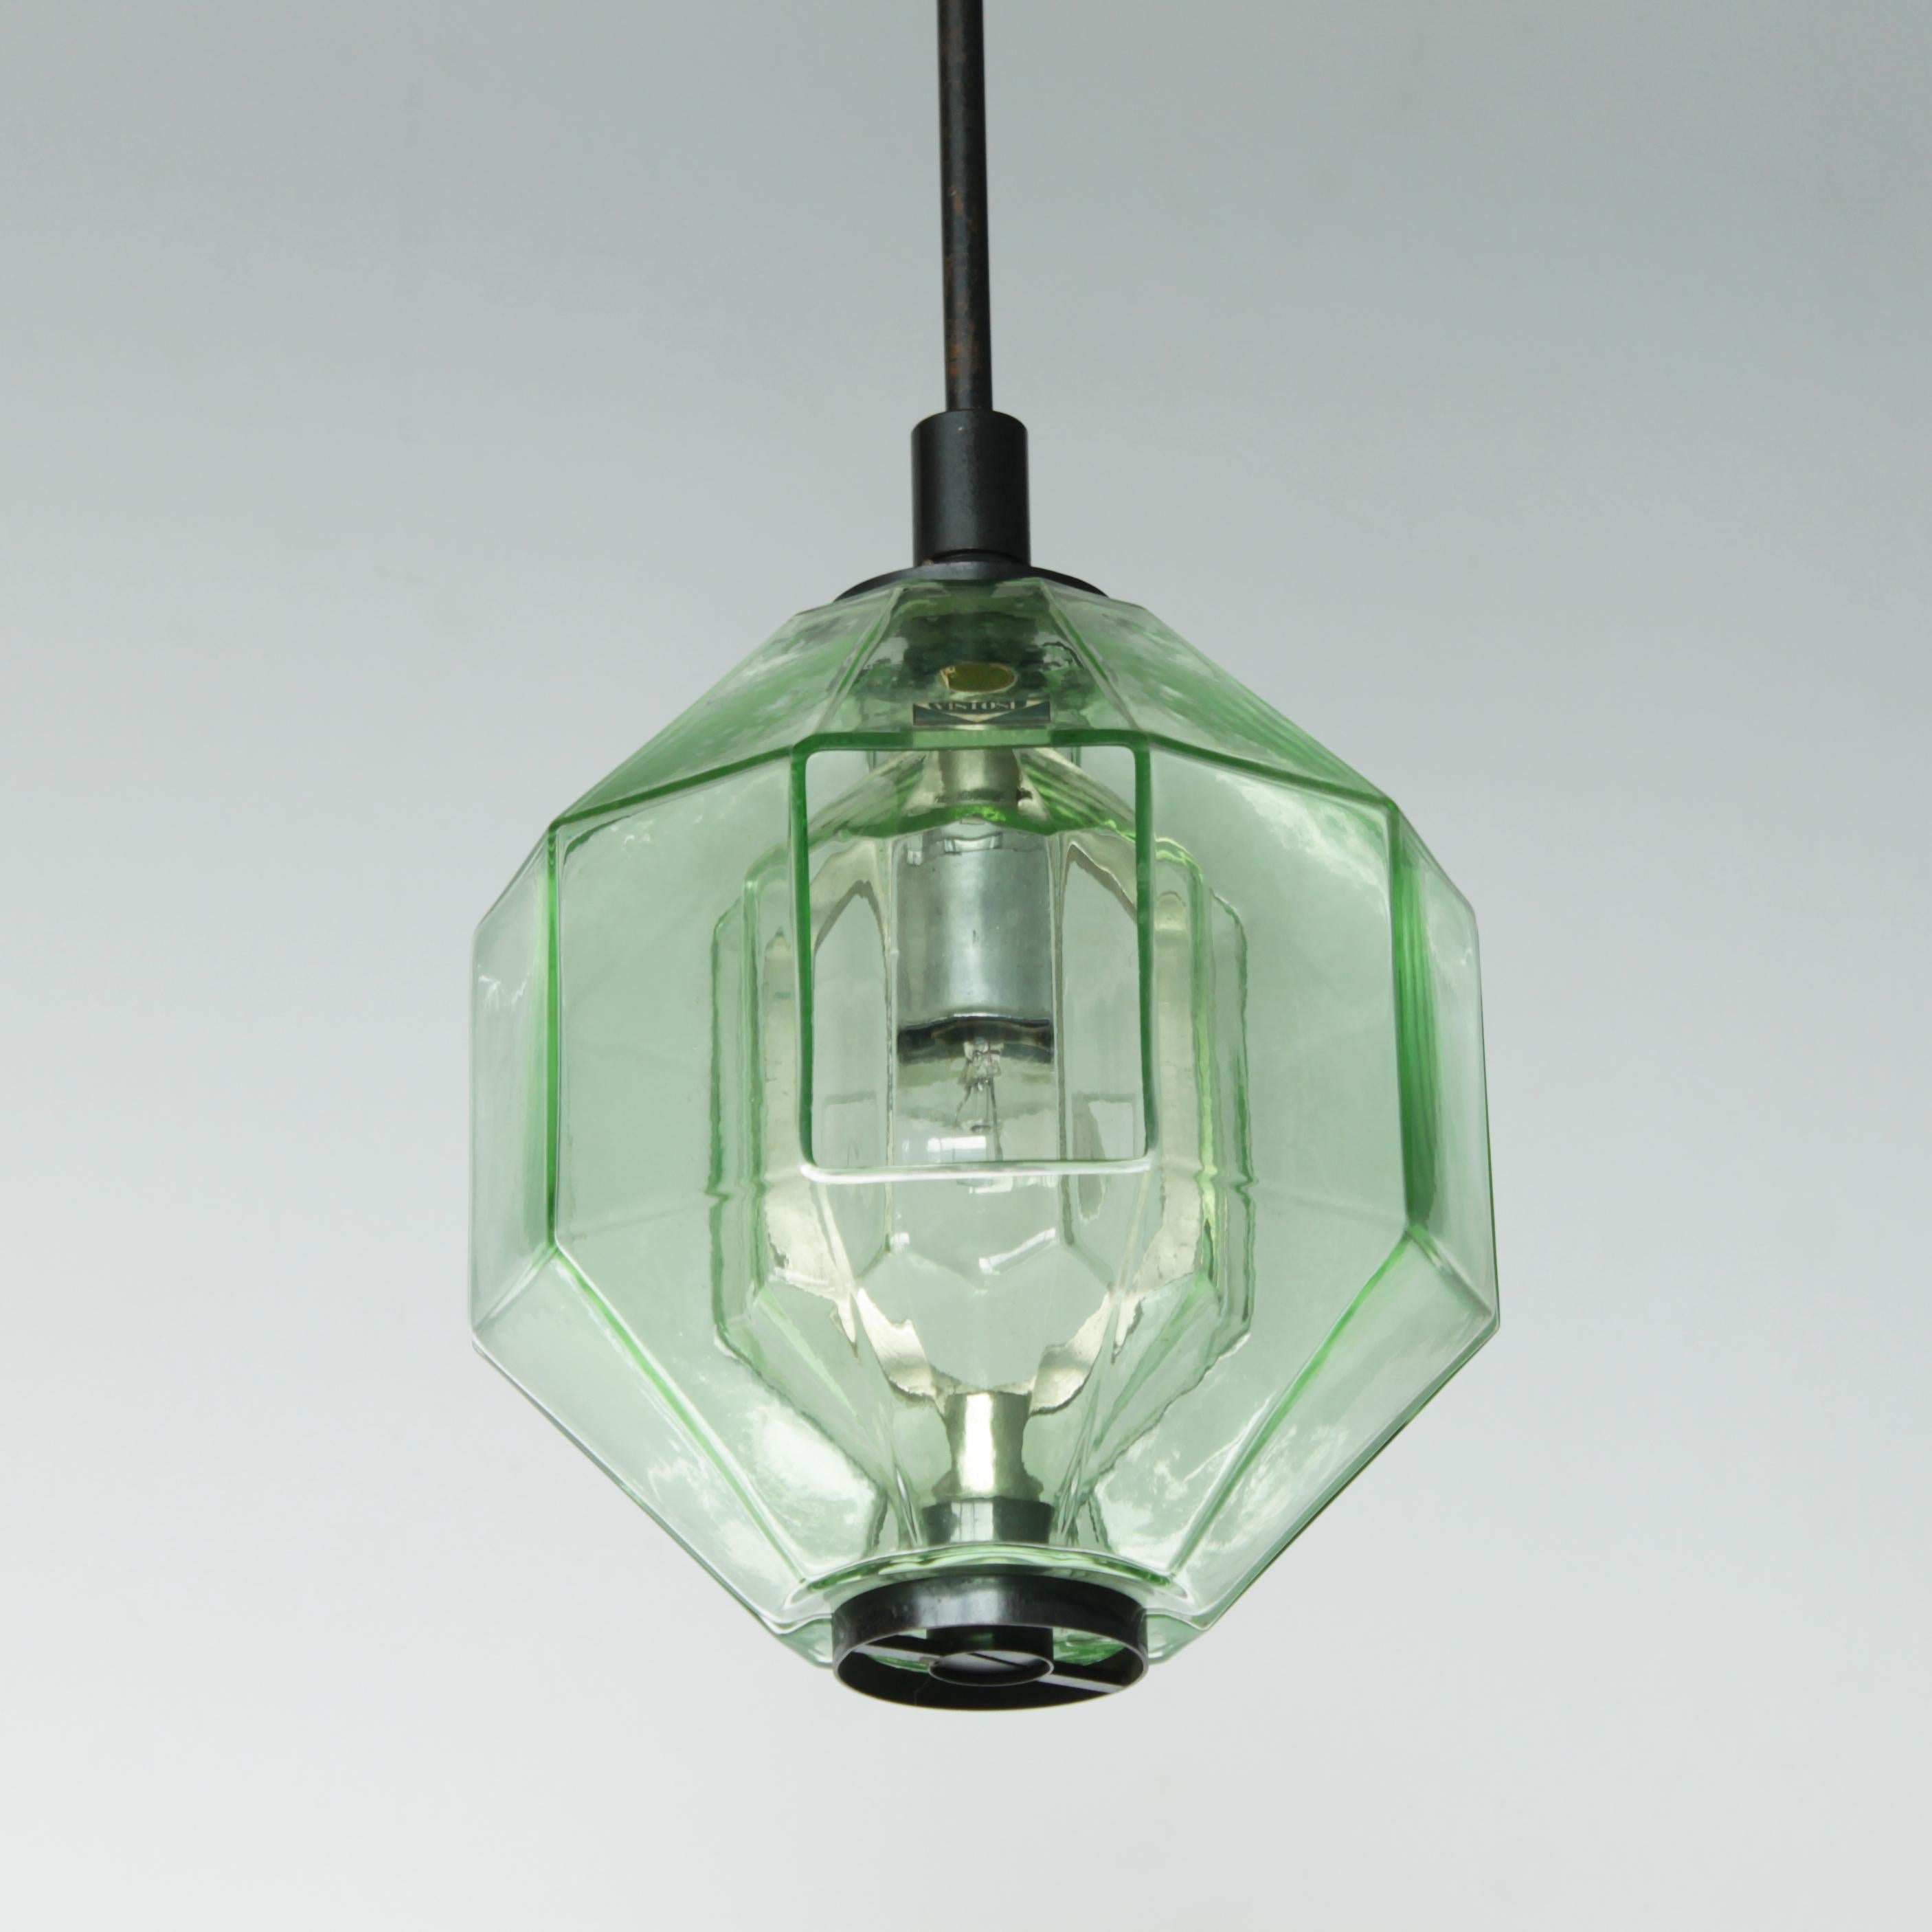 Italian Pendant Lamp by Vinicio Vianello for Vistosi Murano 1